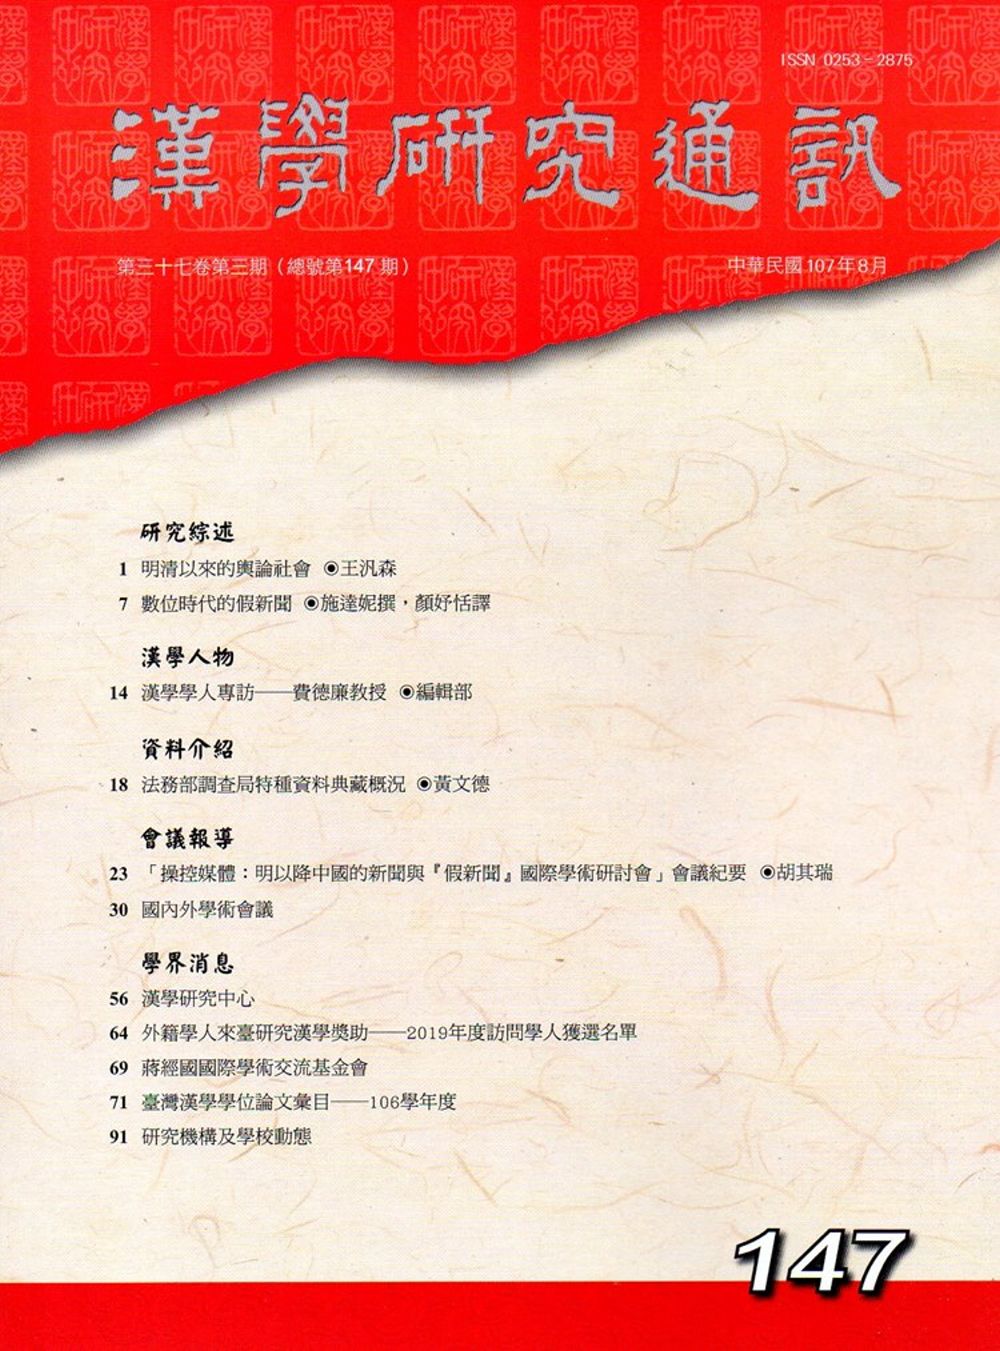 漢學研究通訊37卷3期NO.147(107/08)